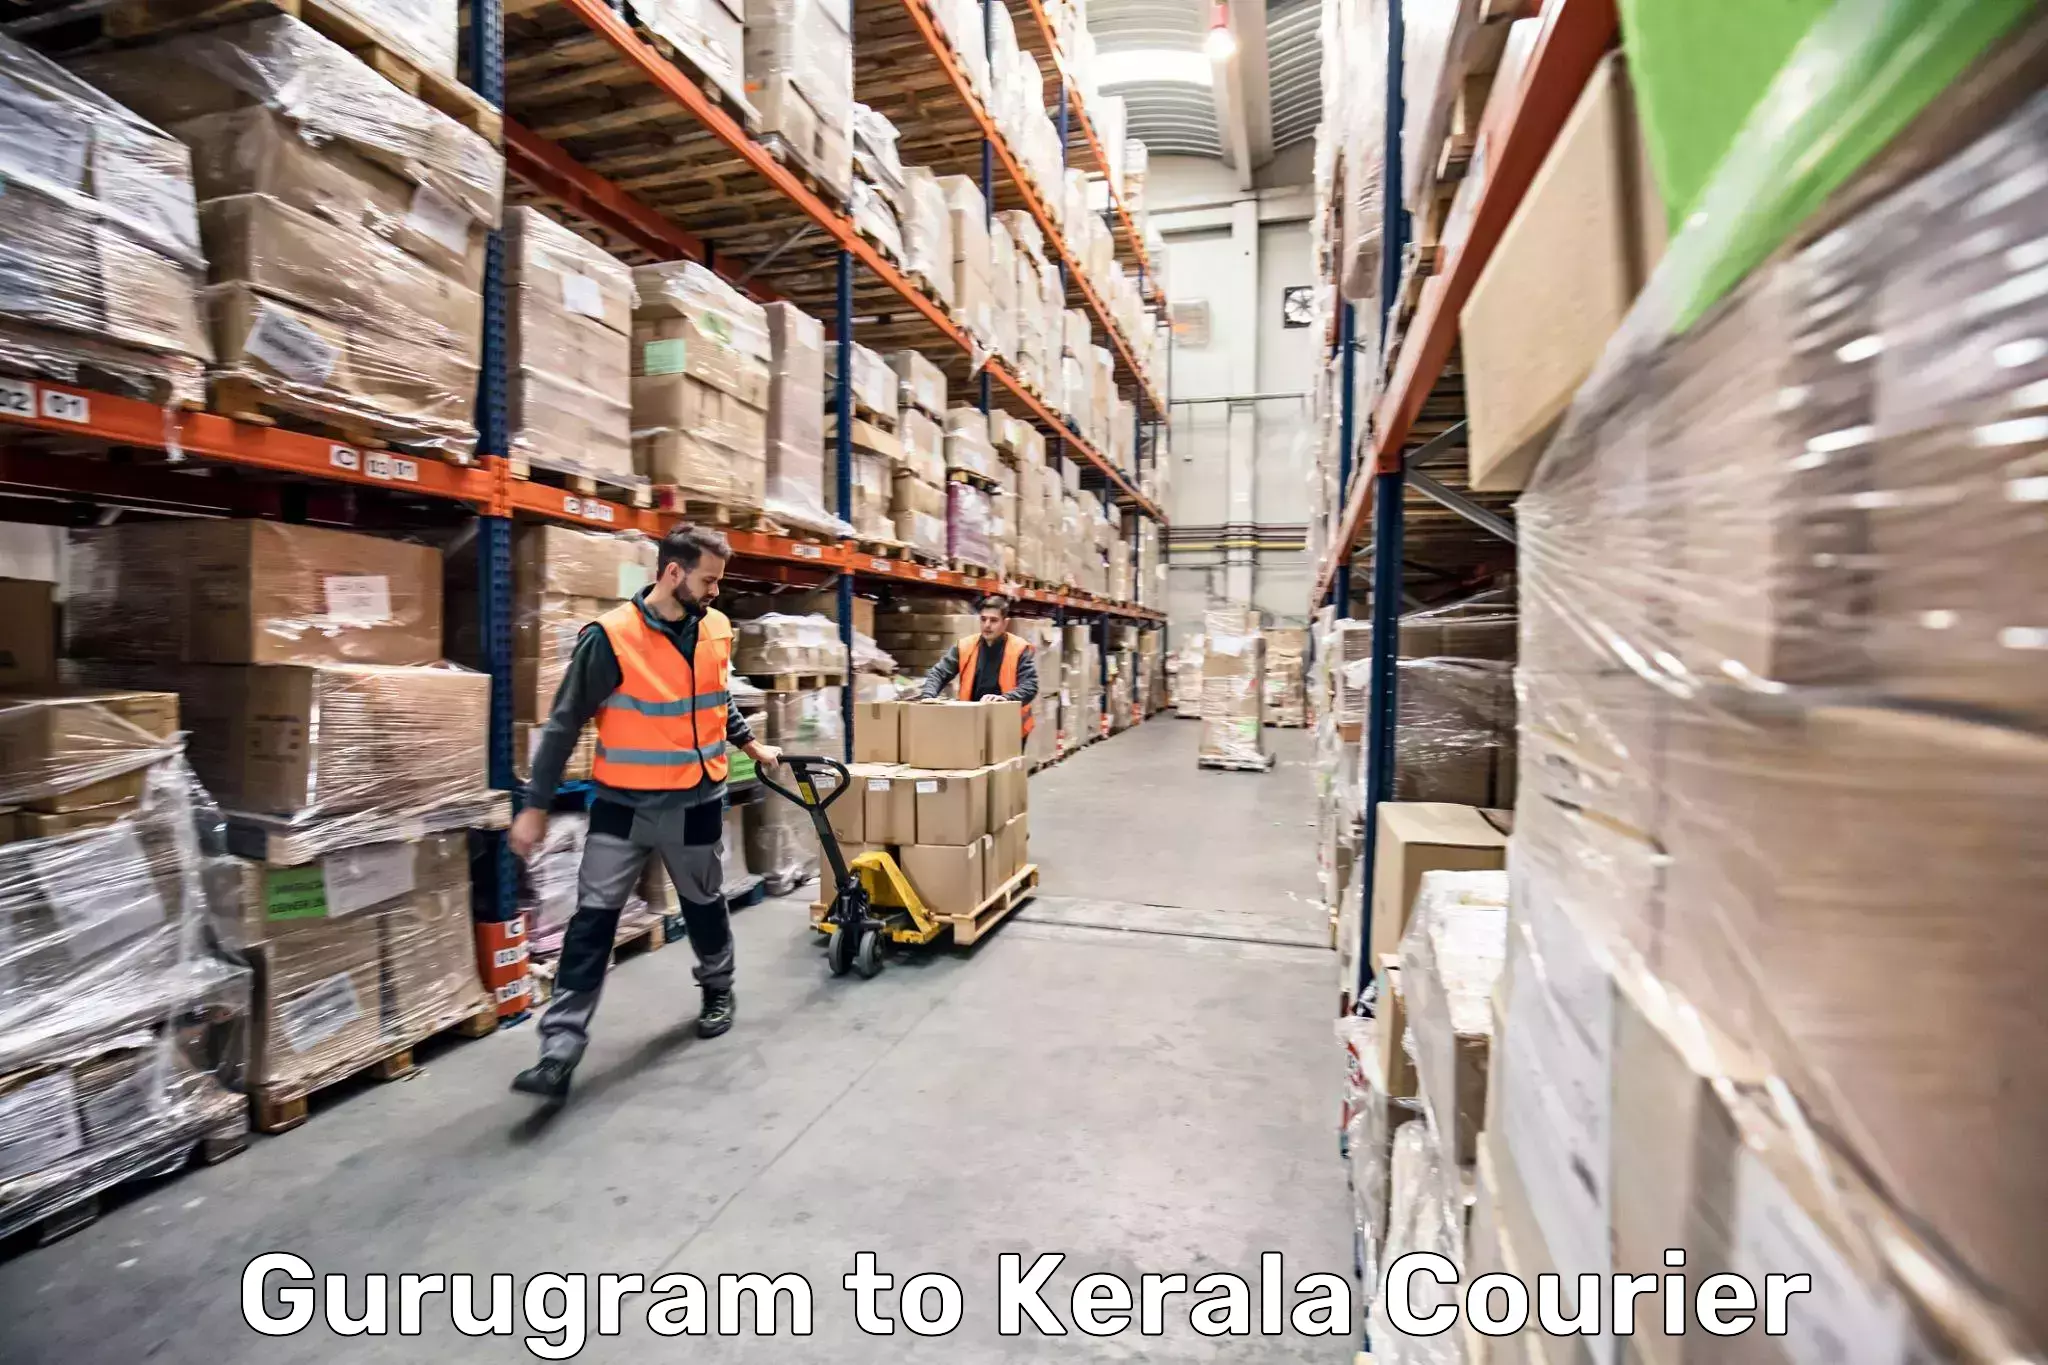 Luggage transport company Gurugram to Palakkad